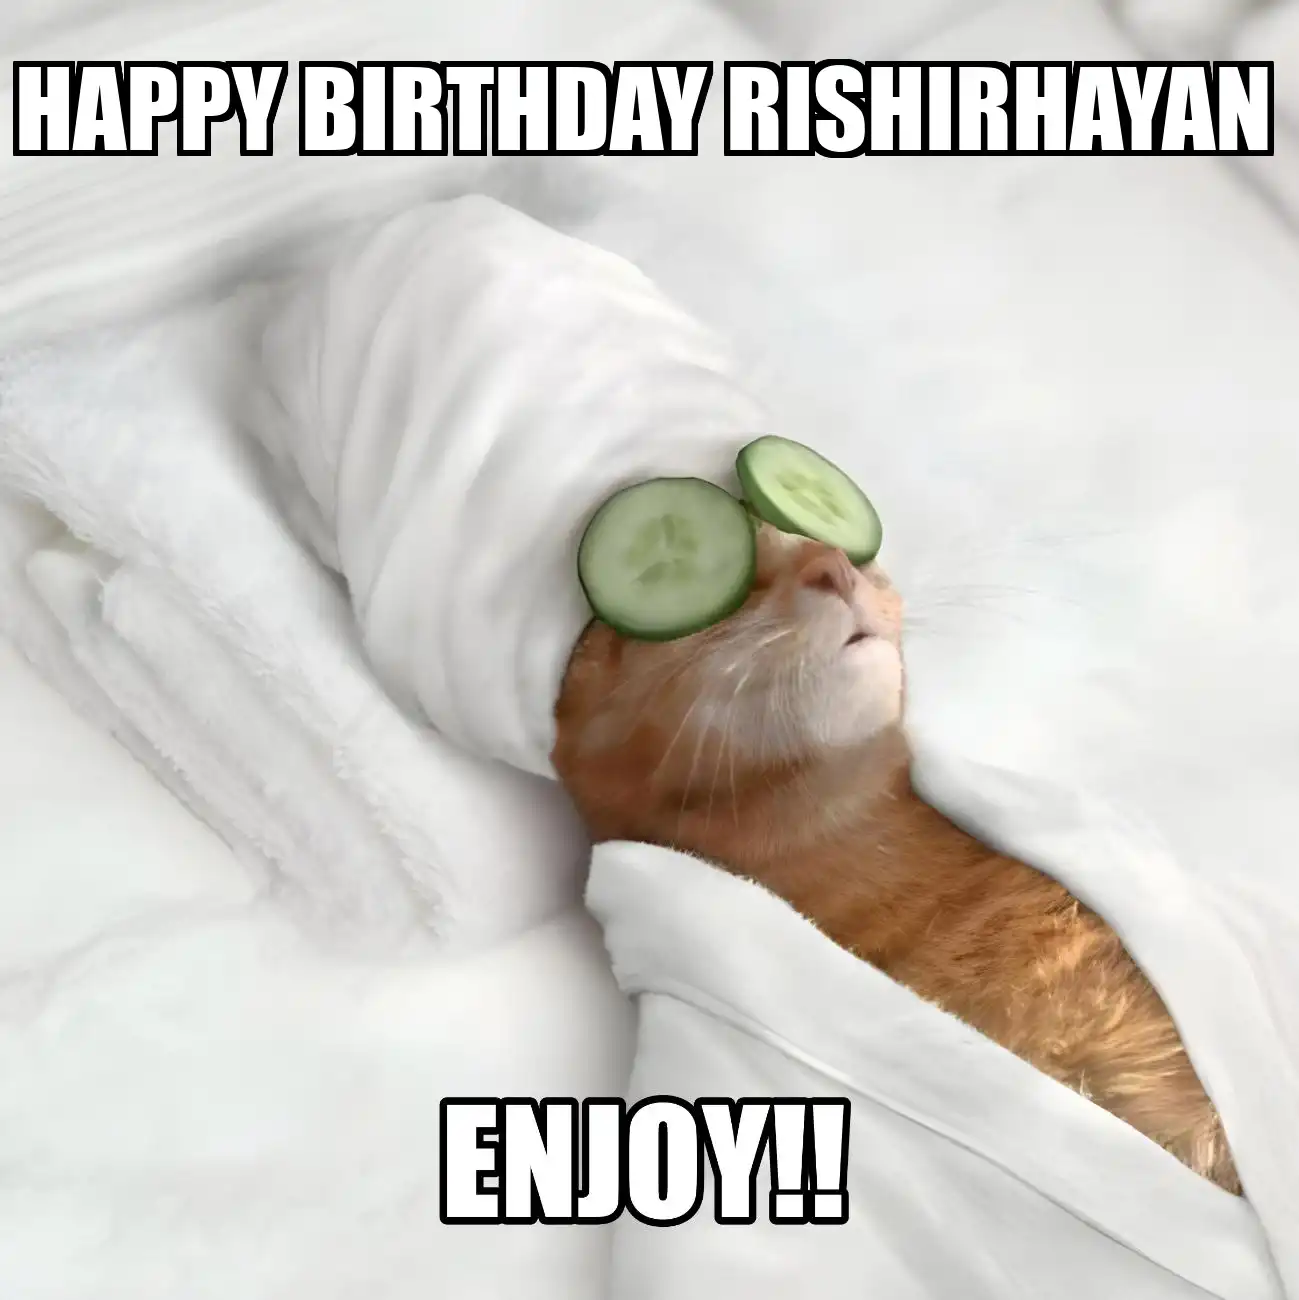 Happy Birthday Rishirhayan Enjoy Cat Meme